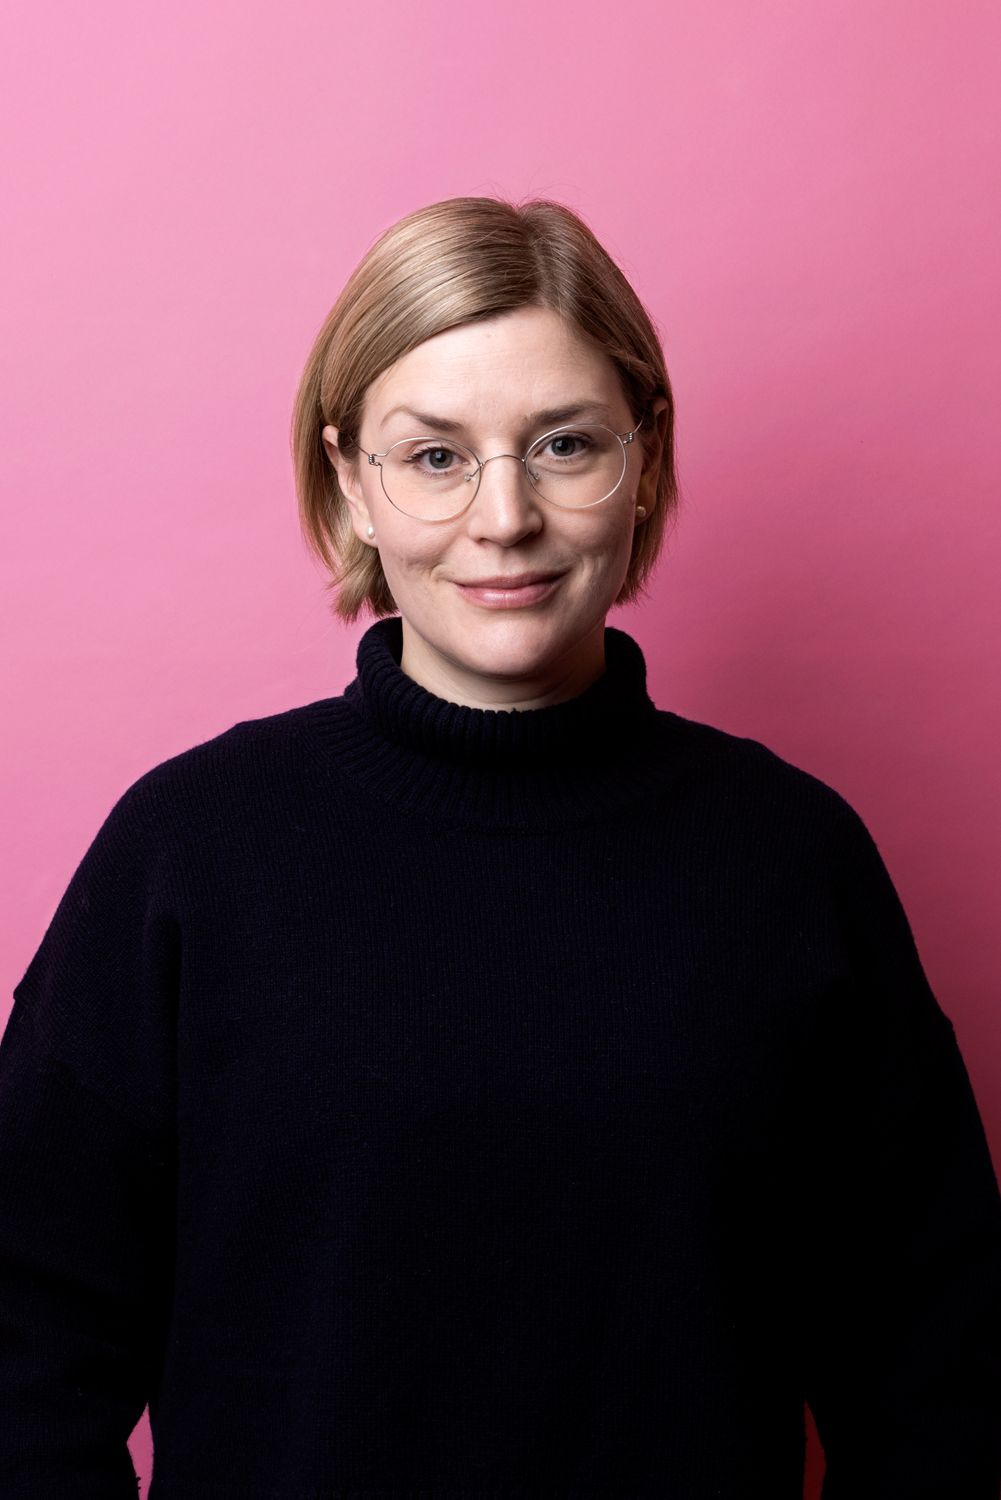 Porträttbild av Karin Lindahl. Karin har kort blont hår och mörkblå polotröja.